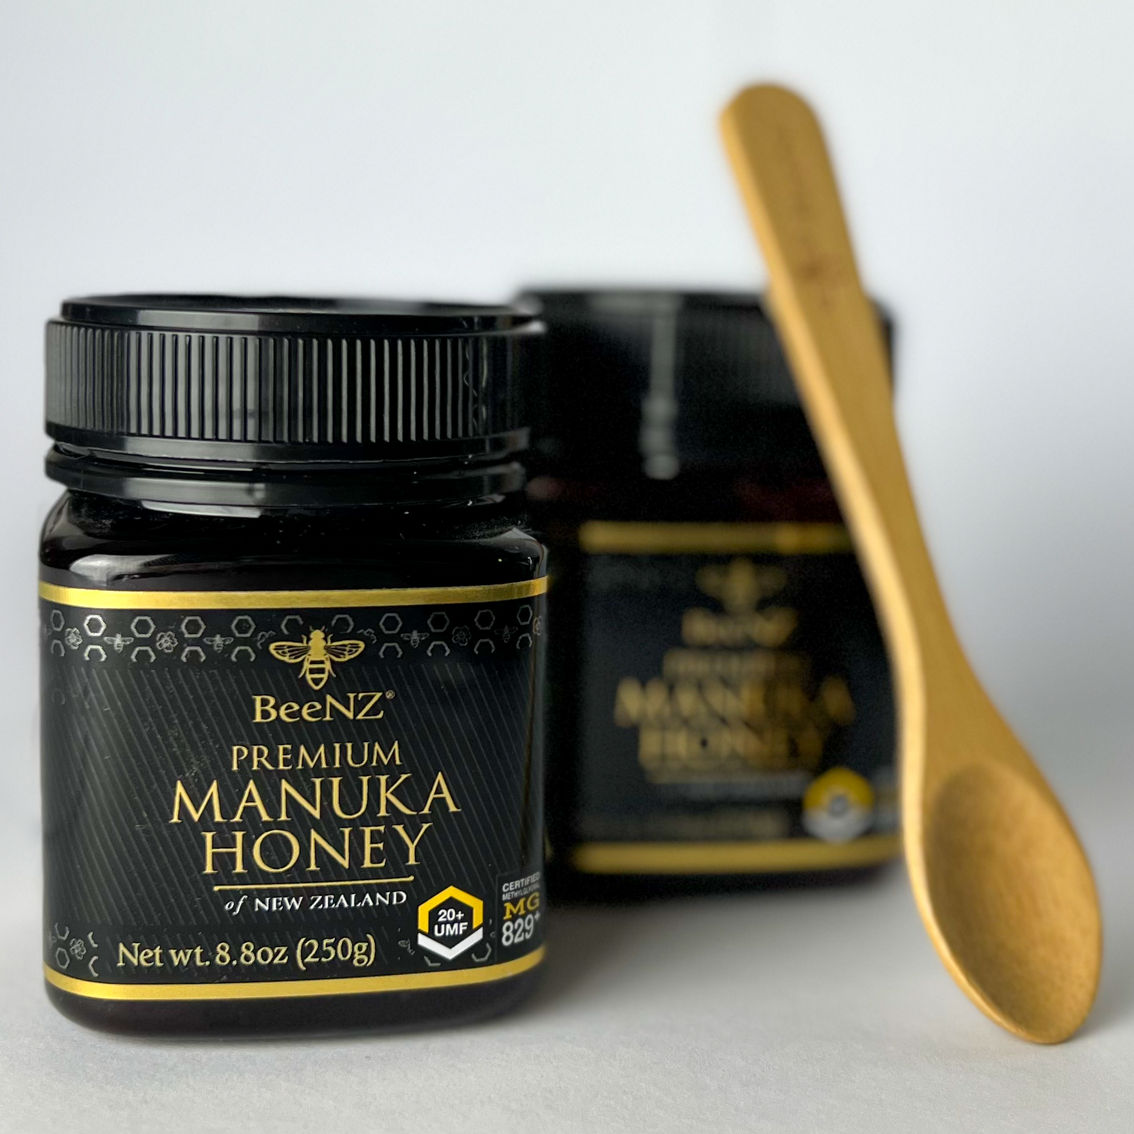 BeeNZ Premium Manuka Honey UMF20, 8.8 oz. - Image 3 of 3